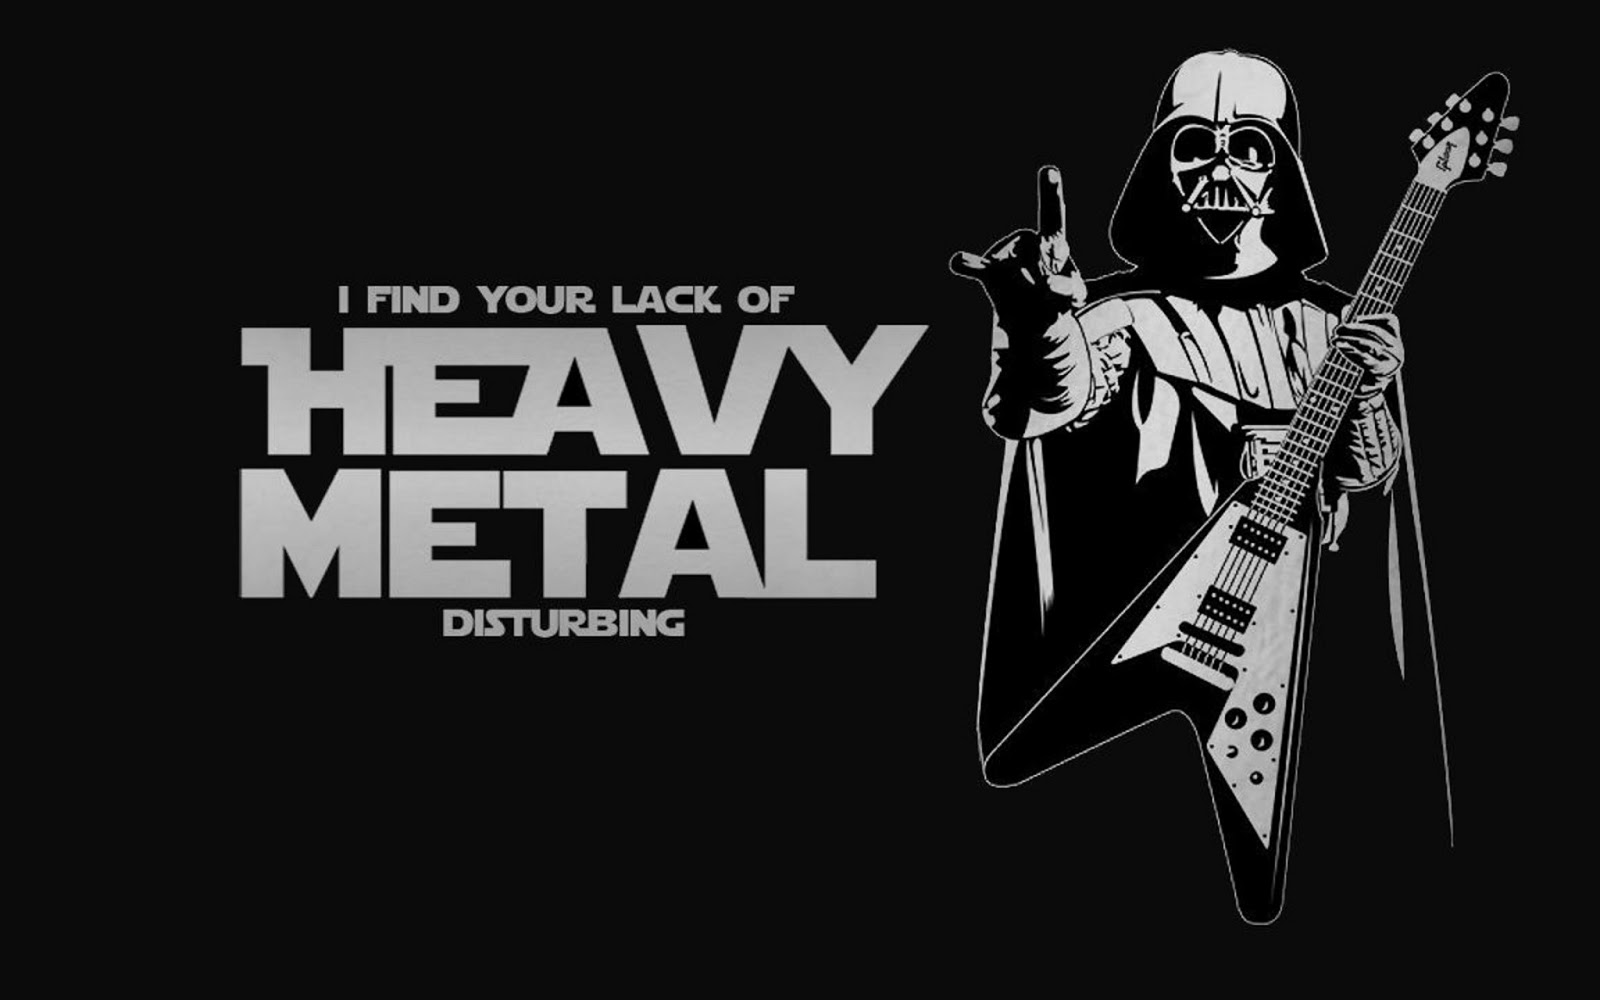 http://2.bp.blogspot.com/-iknzQOKbNsE/UbLPb4dxnNI/AAAAAAAAATY/vhLJOpvm-ac/s1600/I-Find-Your-Lack-of-Heavy-Metal-Disturbing-1.jpg